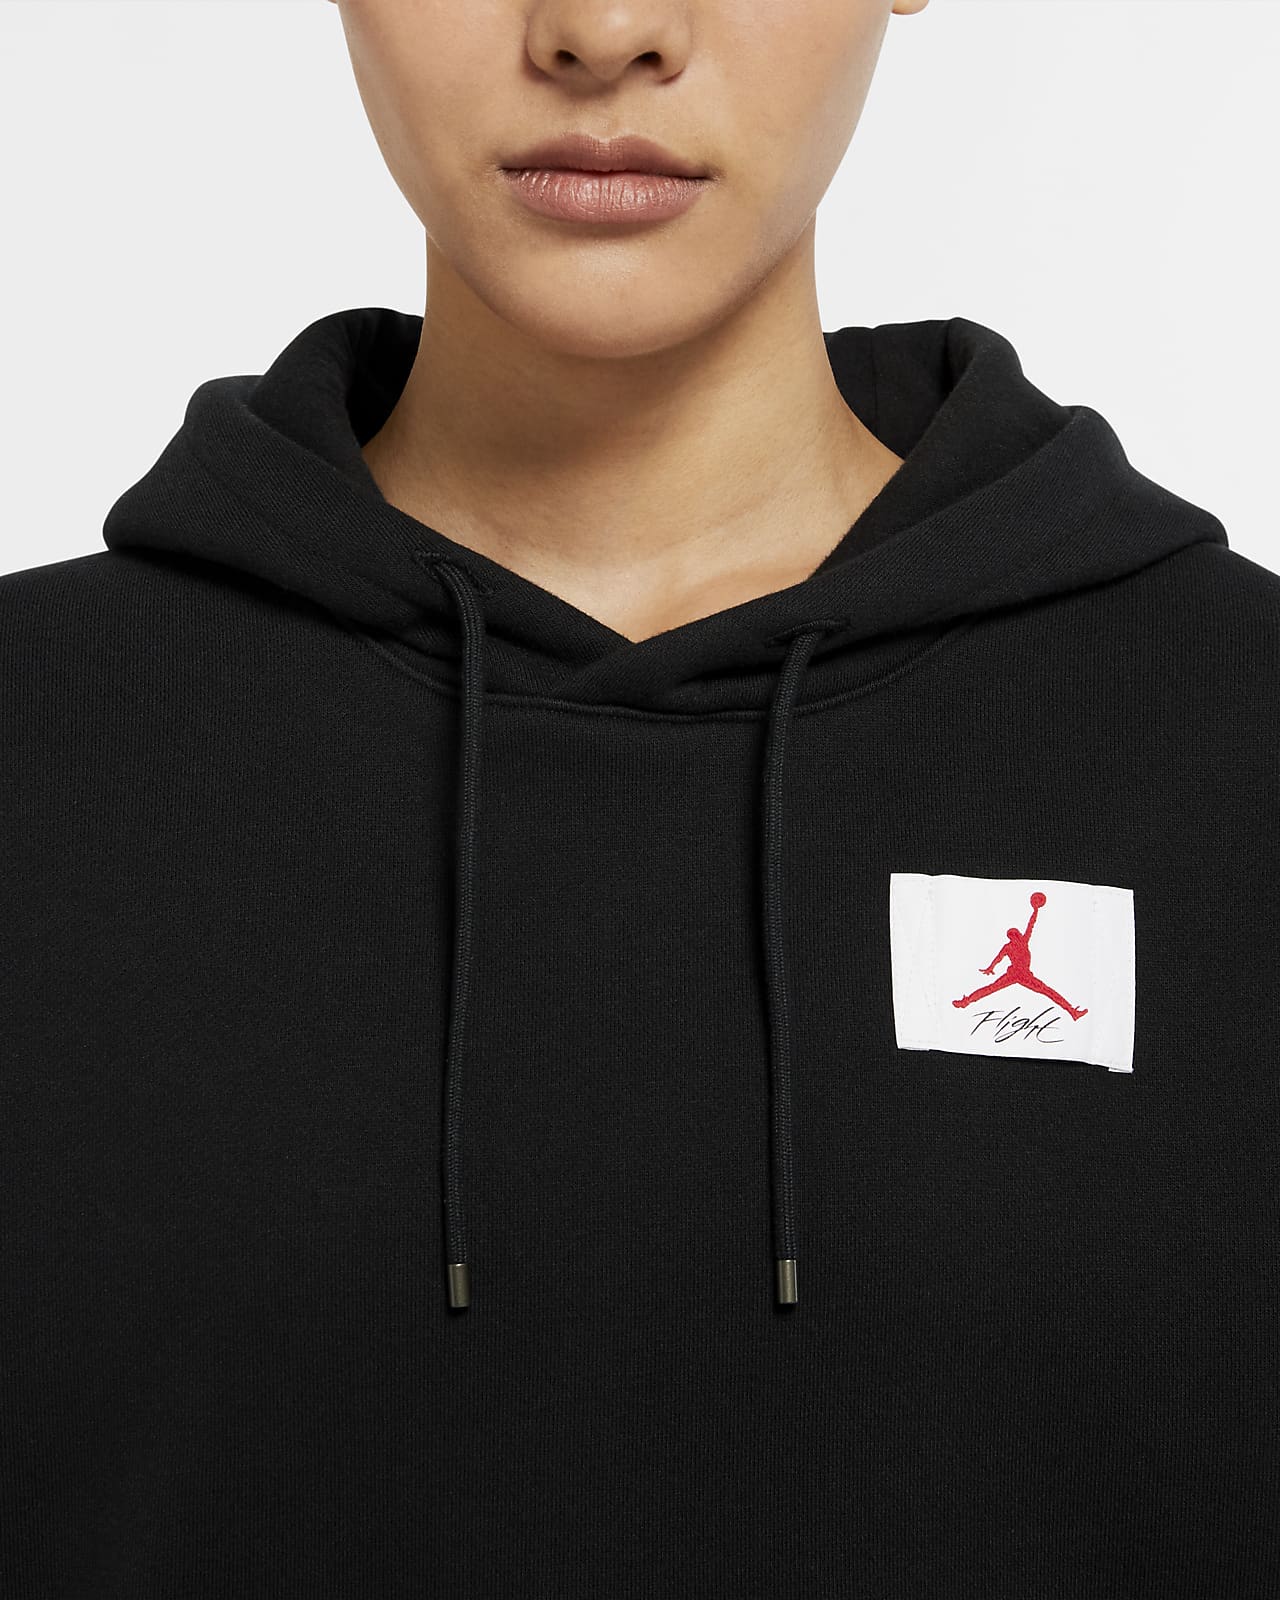 air jordan hoodie women's